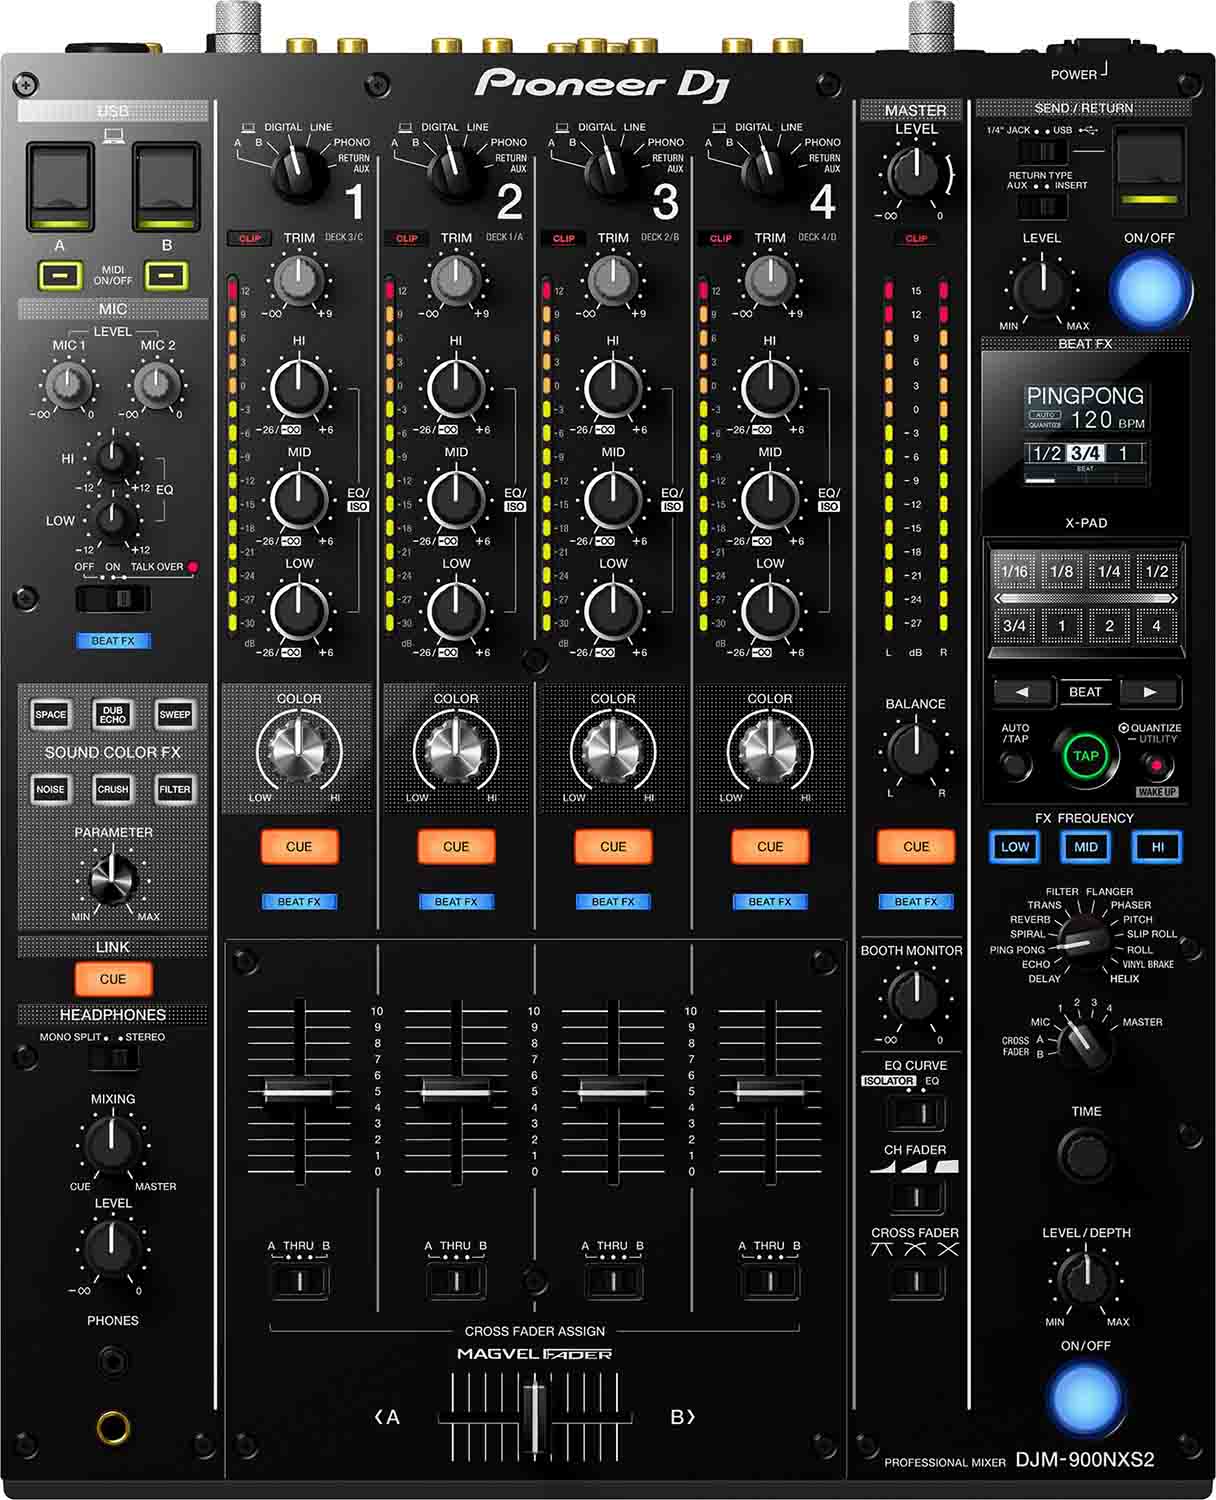 B-Stock: Pioneer DJ DJM-900NXS2 4-Channel Professional DJ Mixer - Black - Hollywood DJ